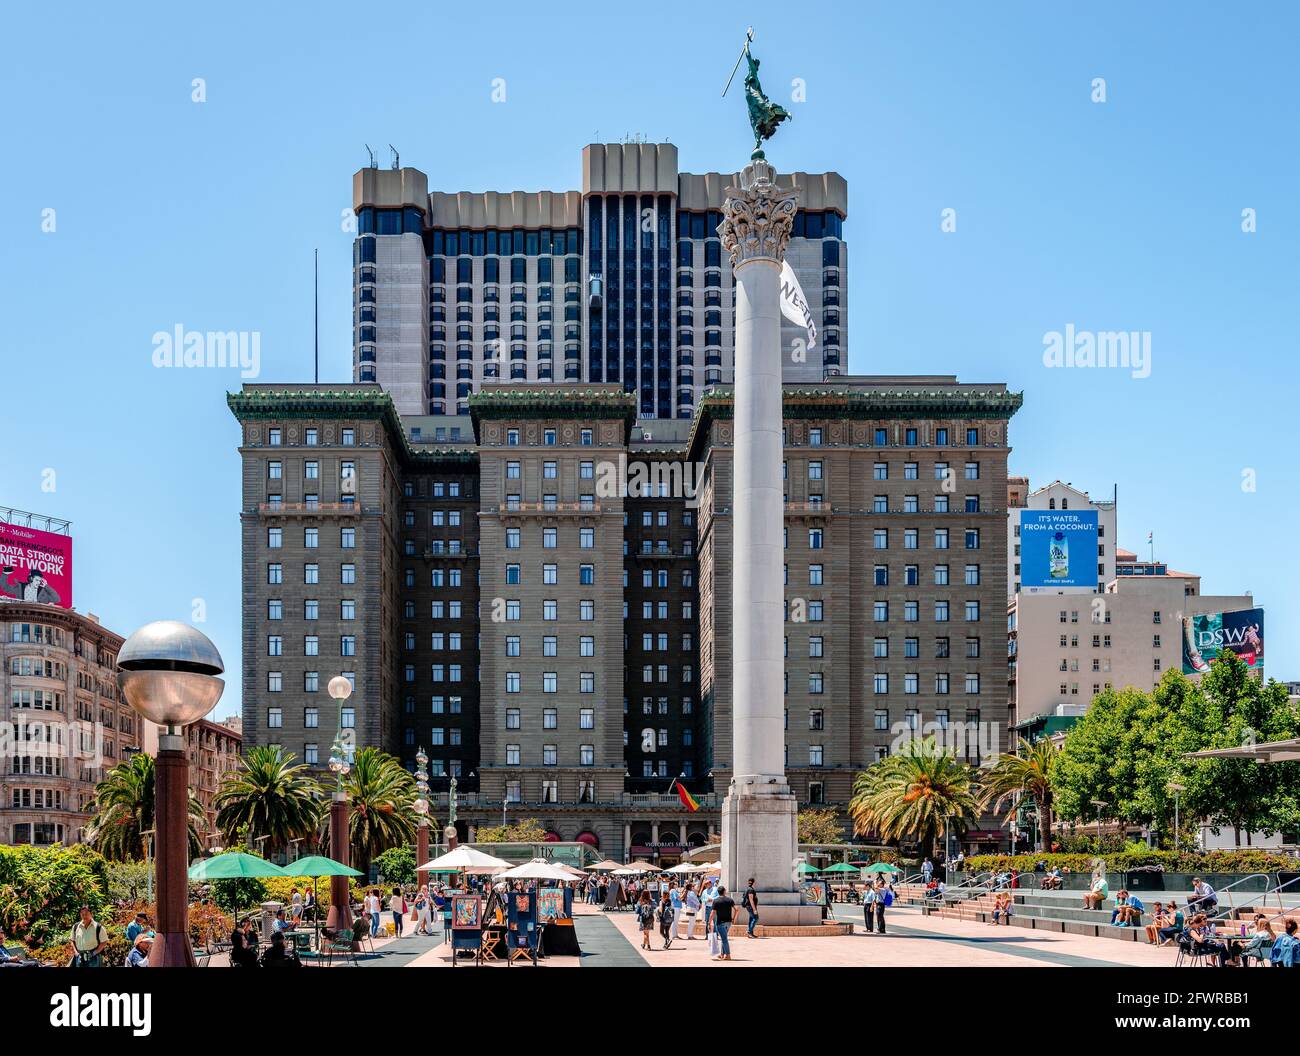 San Francisco, CA / USA - 16 luglio 2015: Vista di Union Square con il Westin St. Francis Hotel e la statua della Vittoria in cima al Dewey Monument. Foto Stock